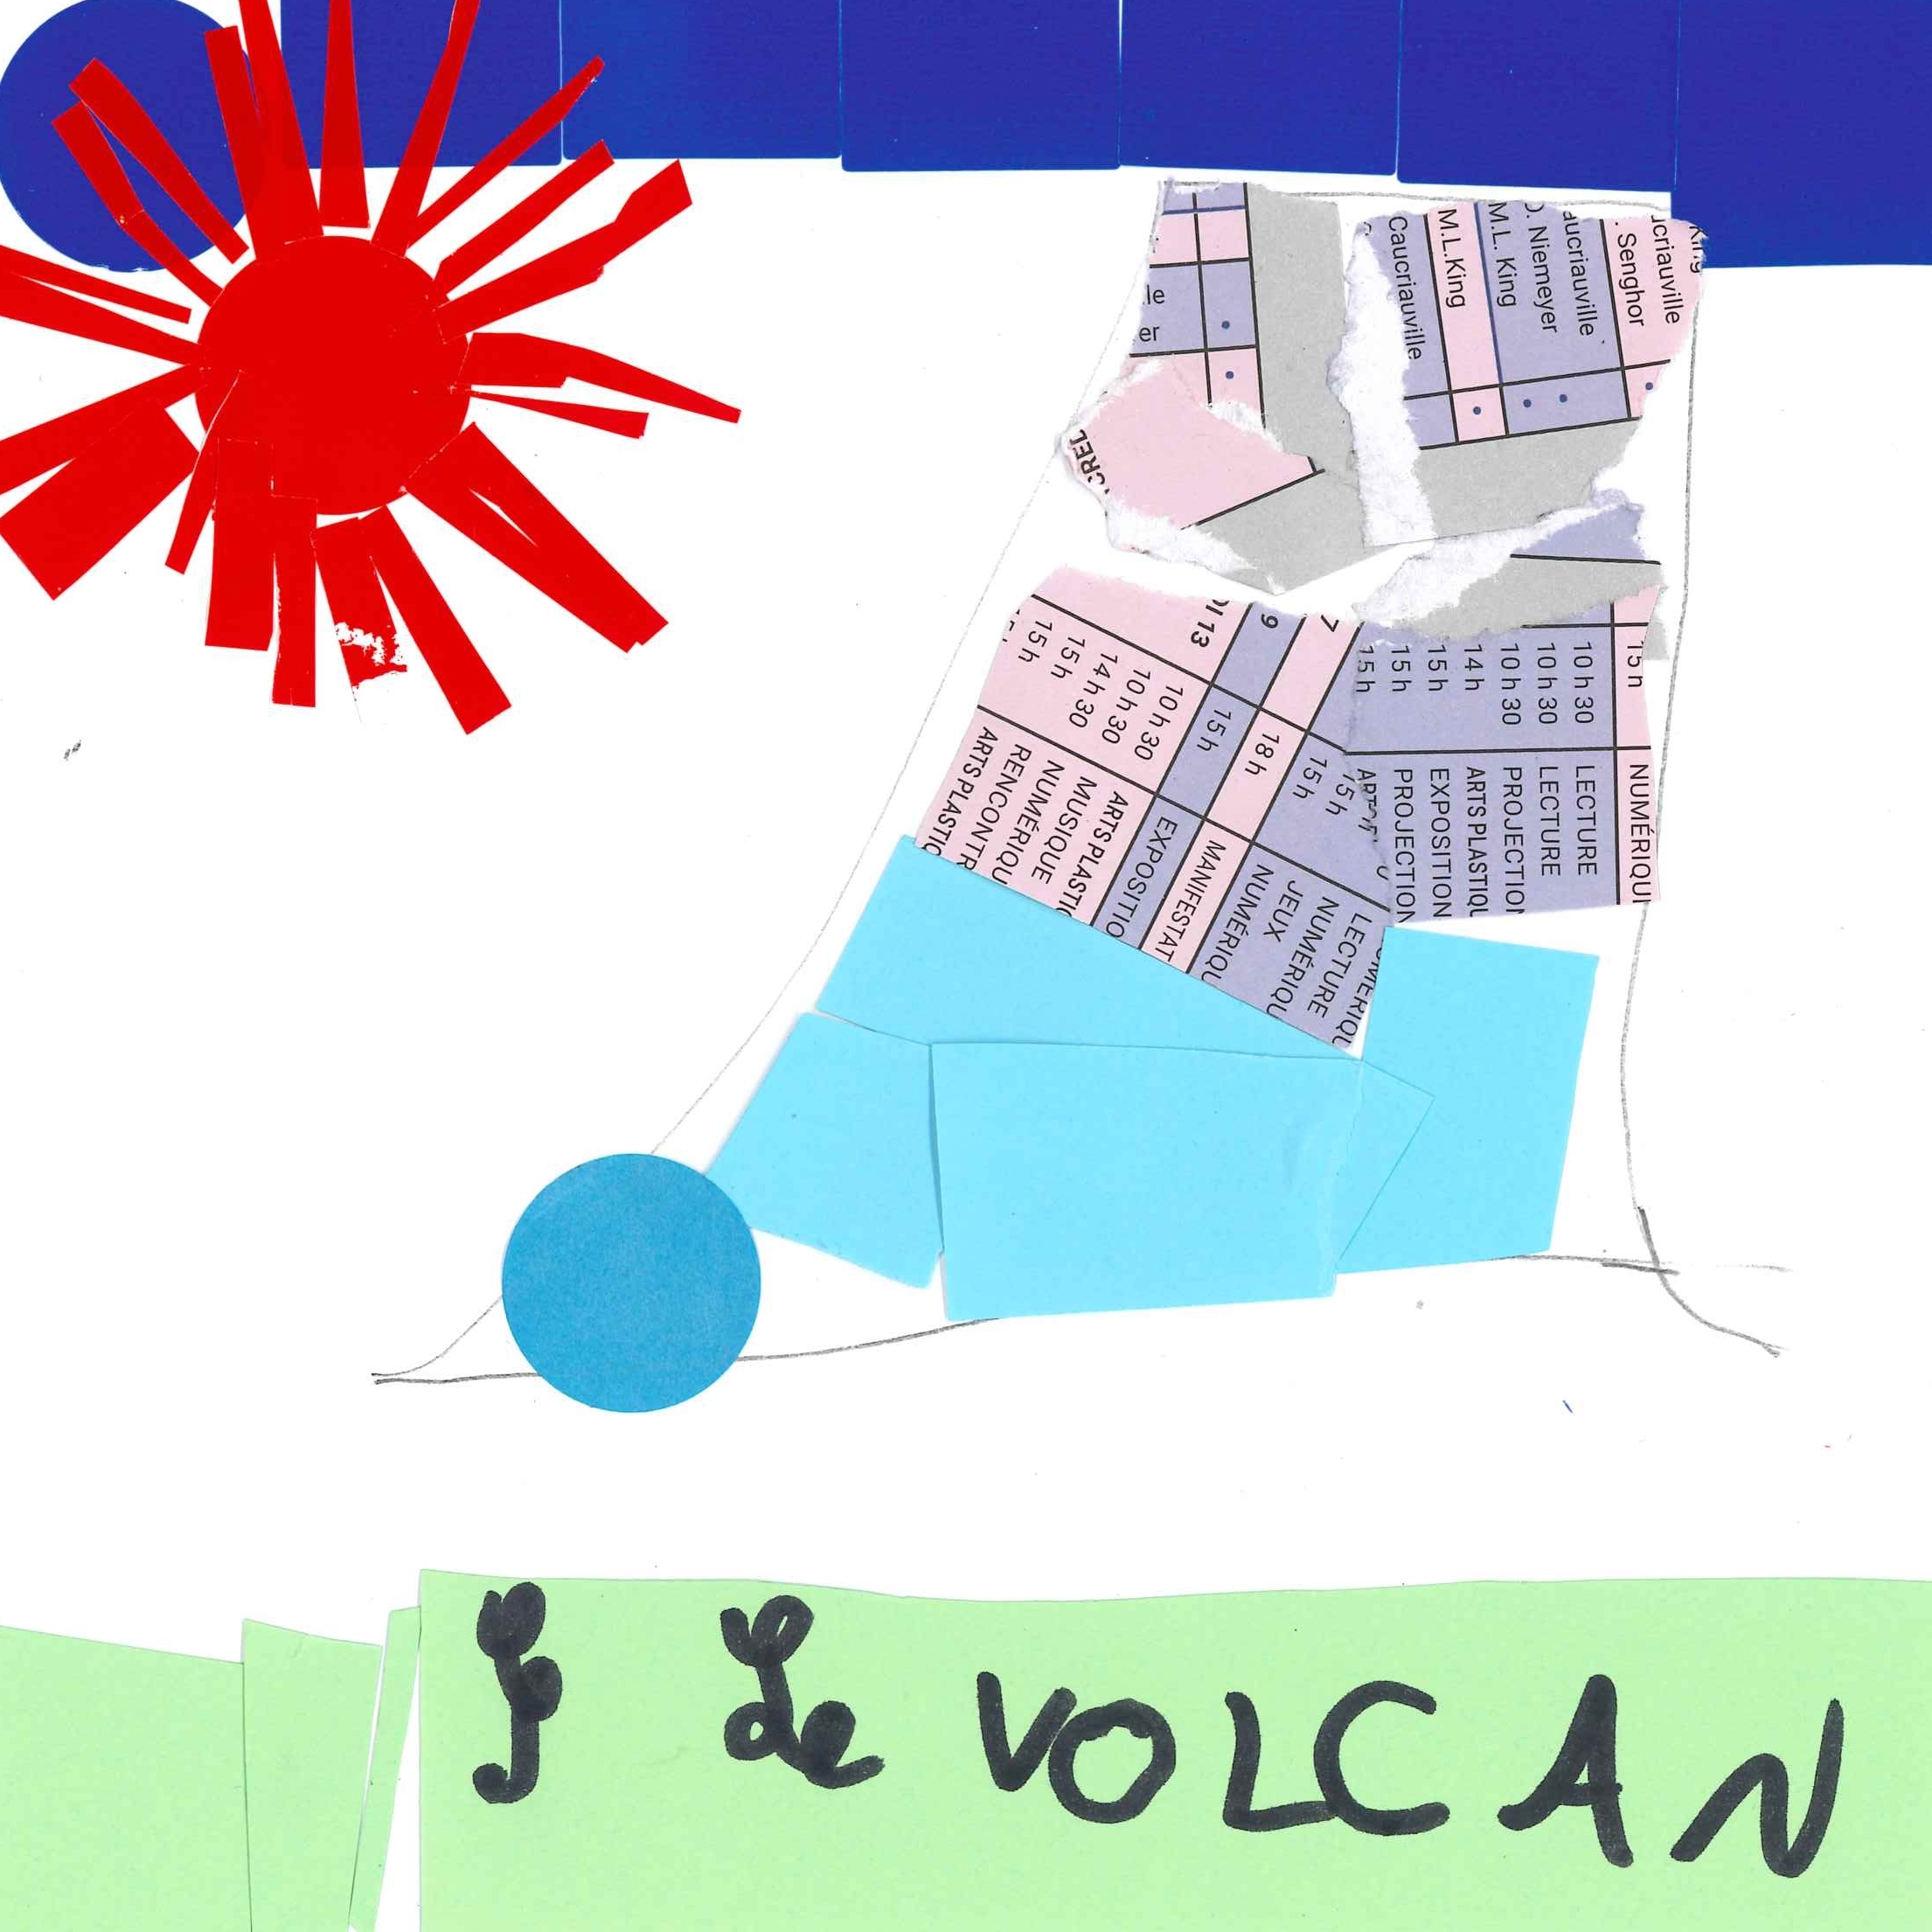 Dessin de Gylan (8 ans). Mot: VolcanTechnique: Découpage / Collage.